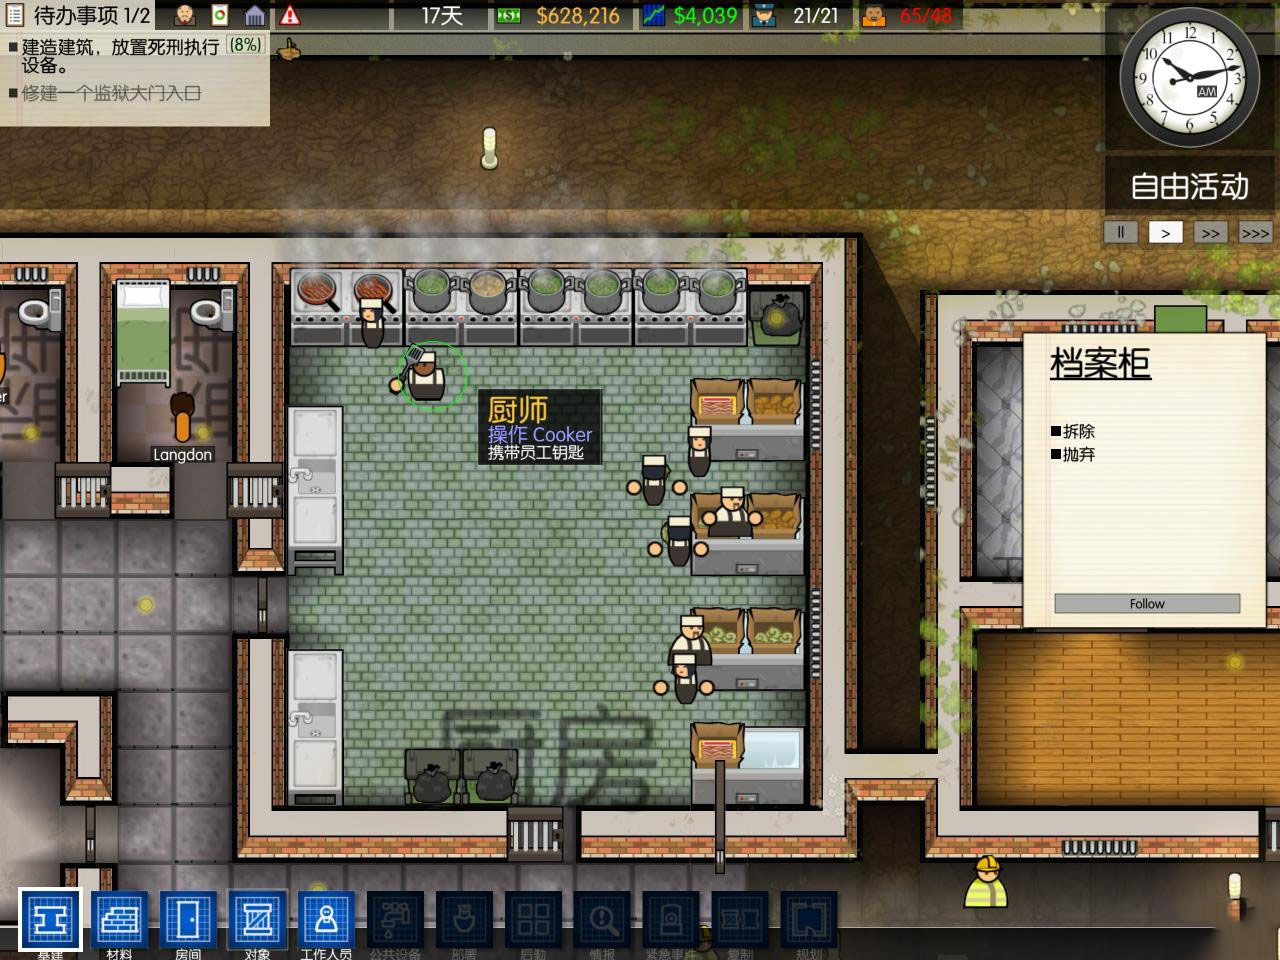 监狱建筑师 Prison Architect for Mac 6327 激活版 - 监狱主题模拟经营类游戏